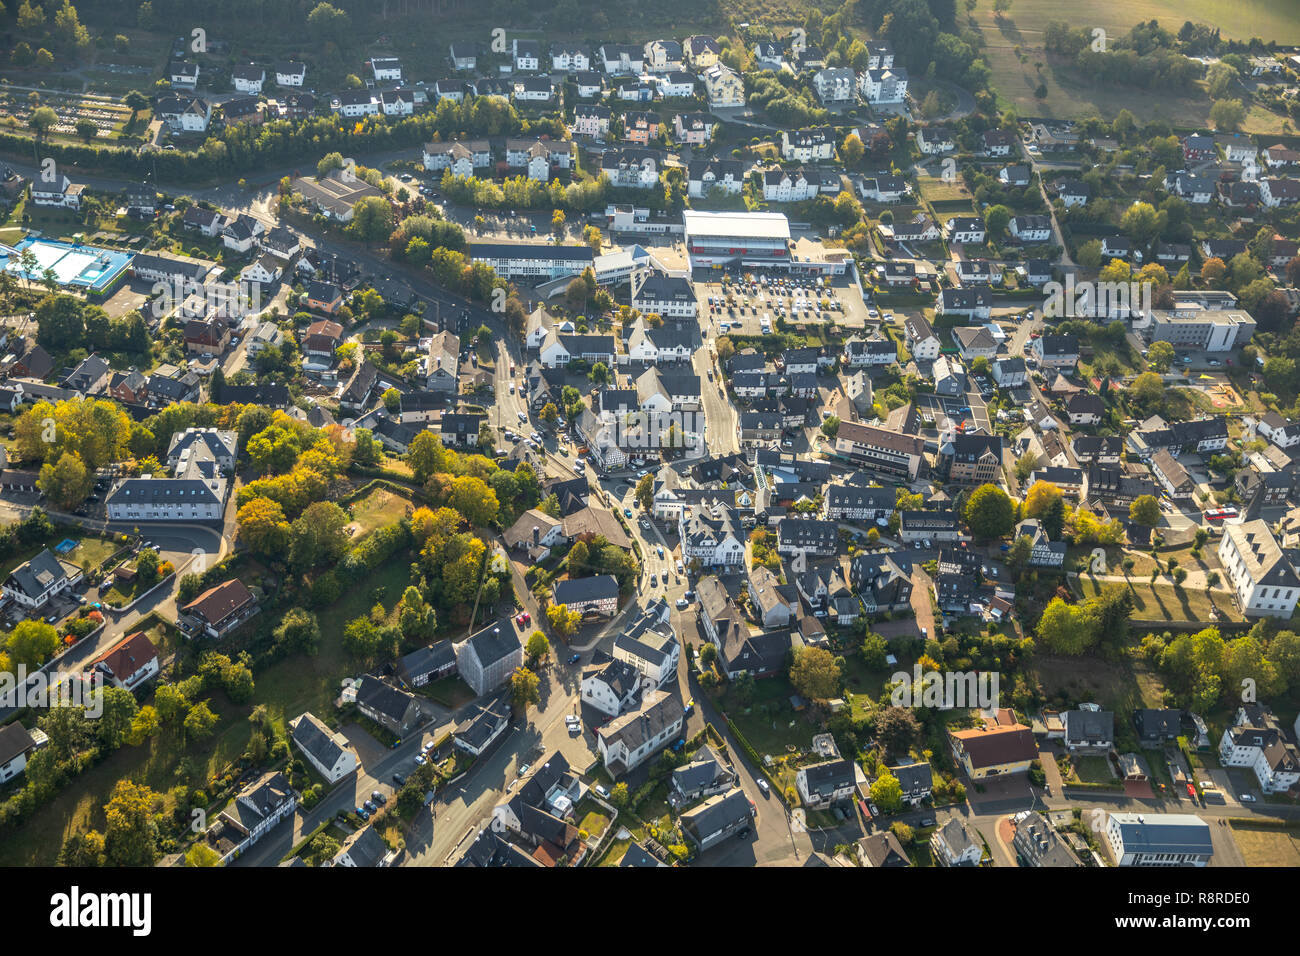 Vue aérienne d'ensemble de la Communauté, Burbach, école primaire, REWE meilleur Petz, marché, Burbach, Kreis Düren, Rhénanie du Nord-Westphalie, Germ Banque D'Images